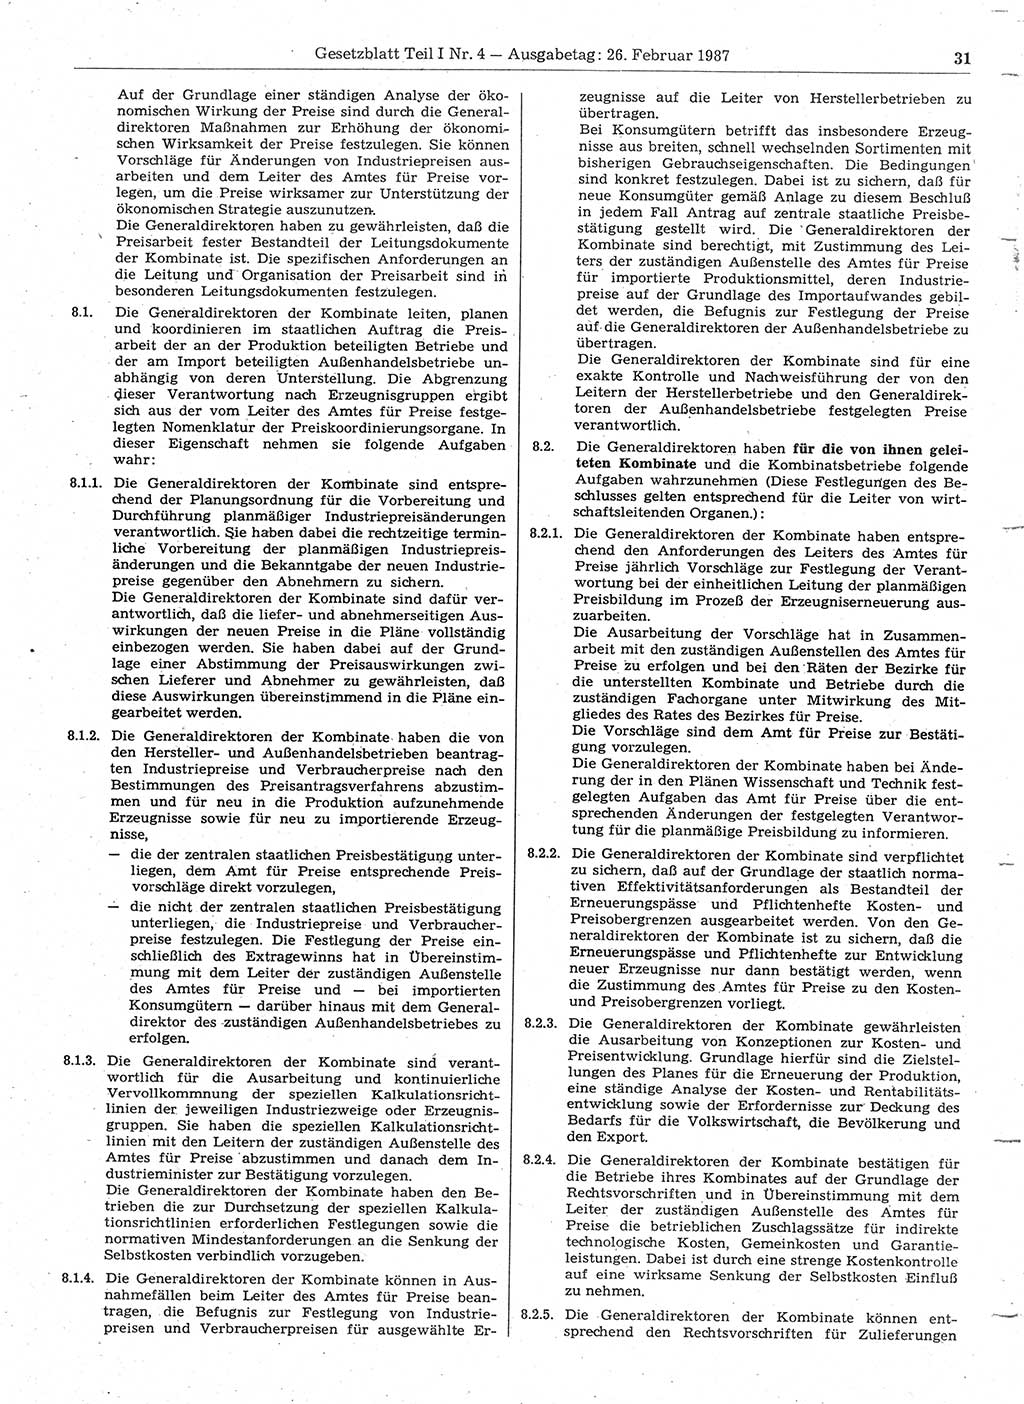 Gesetzblatt (GBl.) der Deutschen Demokratischen Republik (DDR) Teil Ⅰ 1987, Seite 31 (GBl. DDR Ⅰ 1987, S. 31)